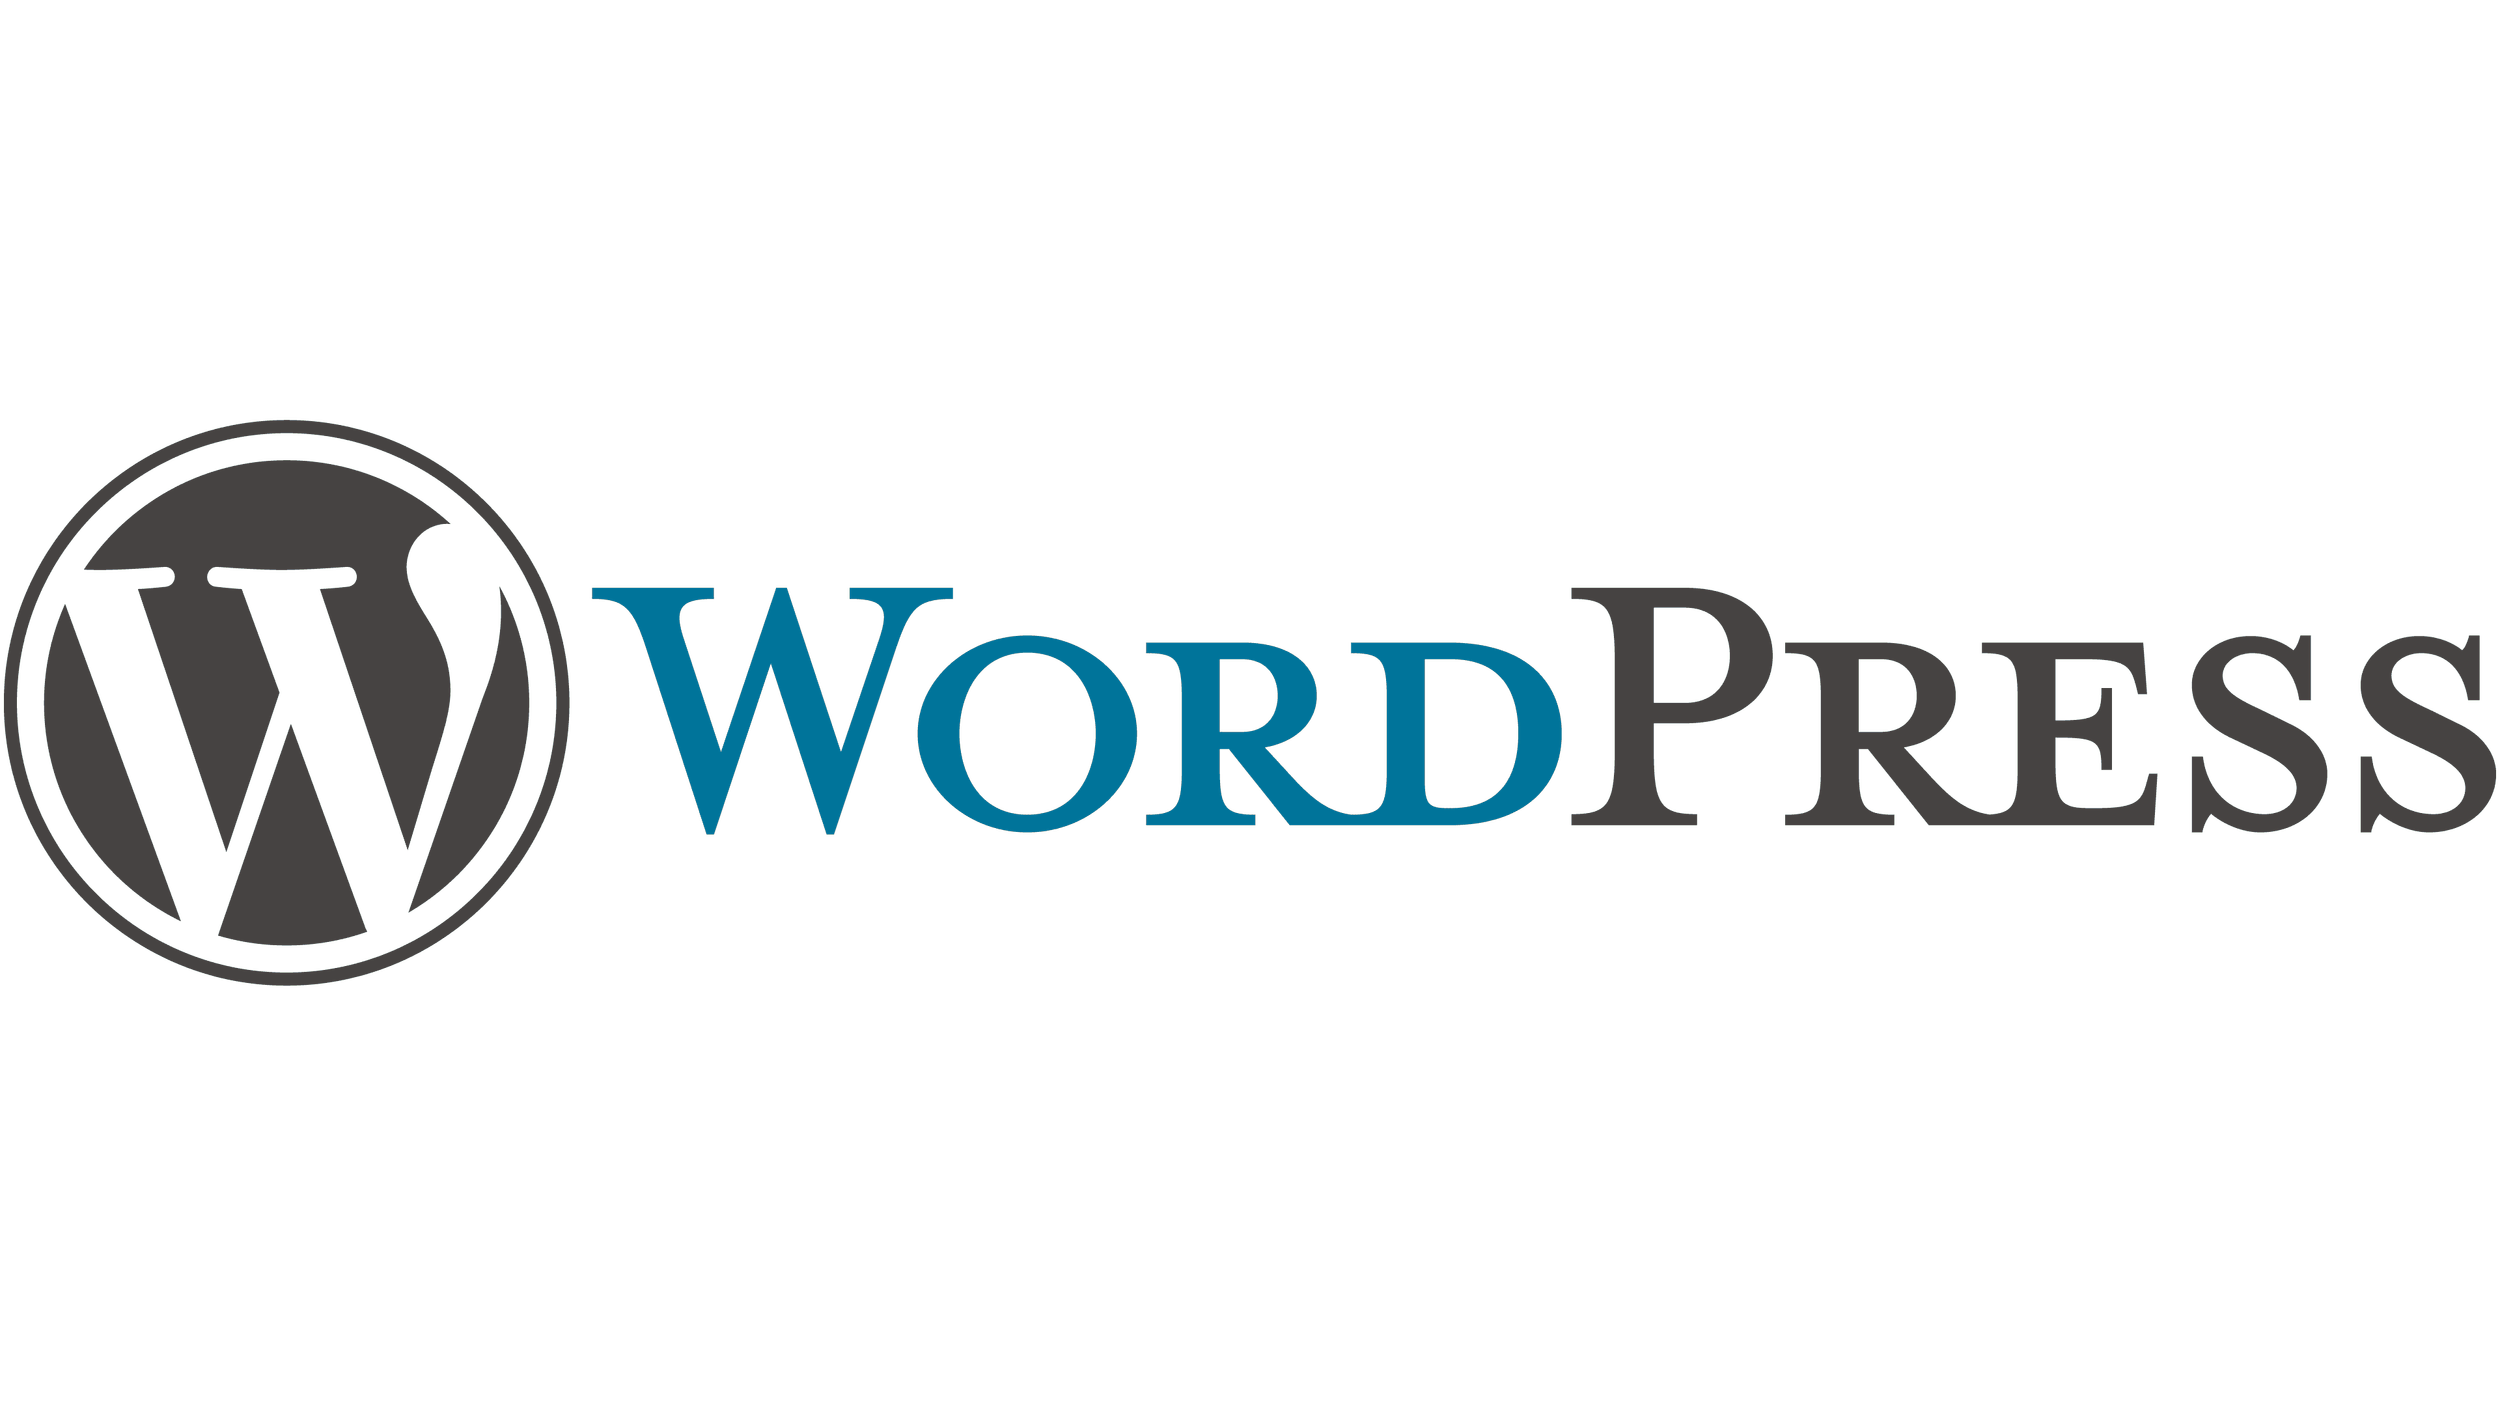 WordPress-logo.png